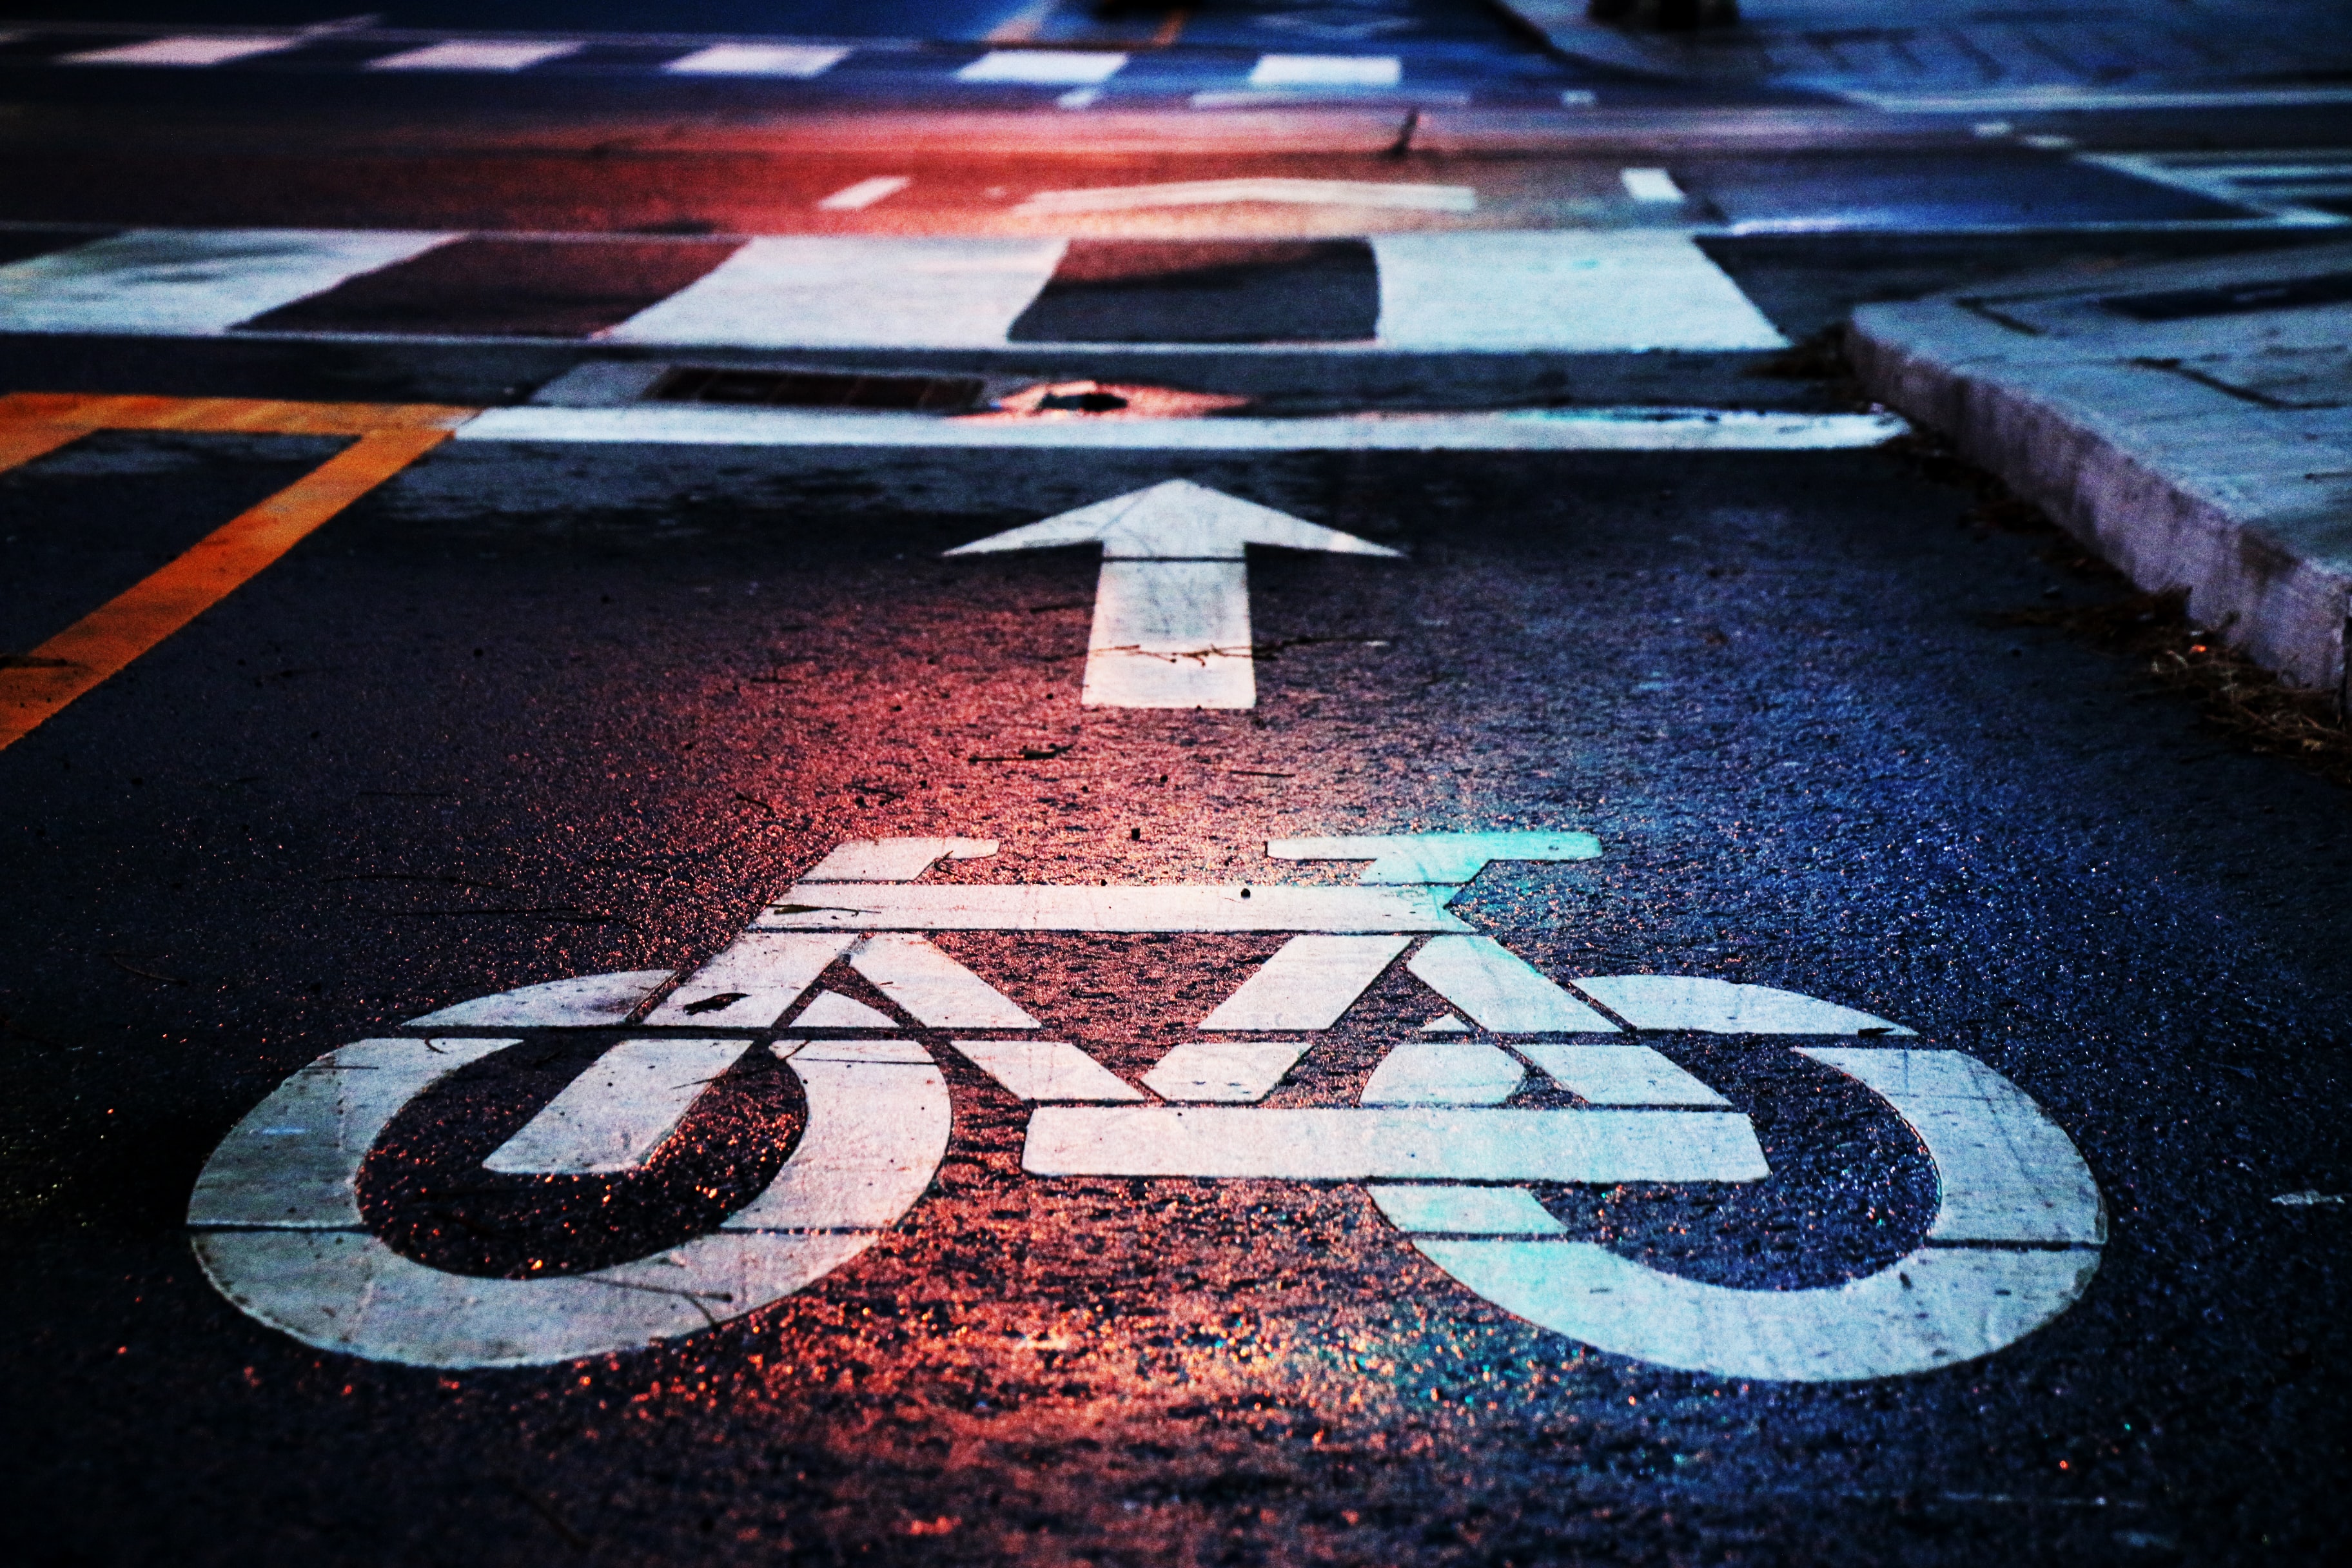 Bike lane signage on road